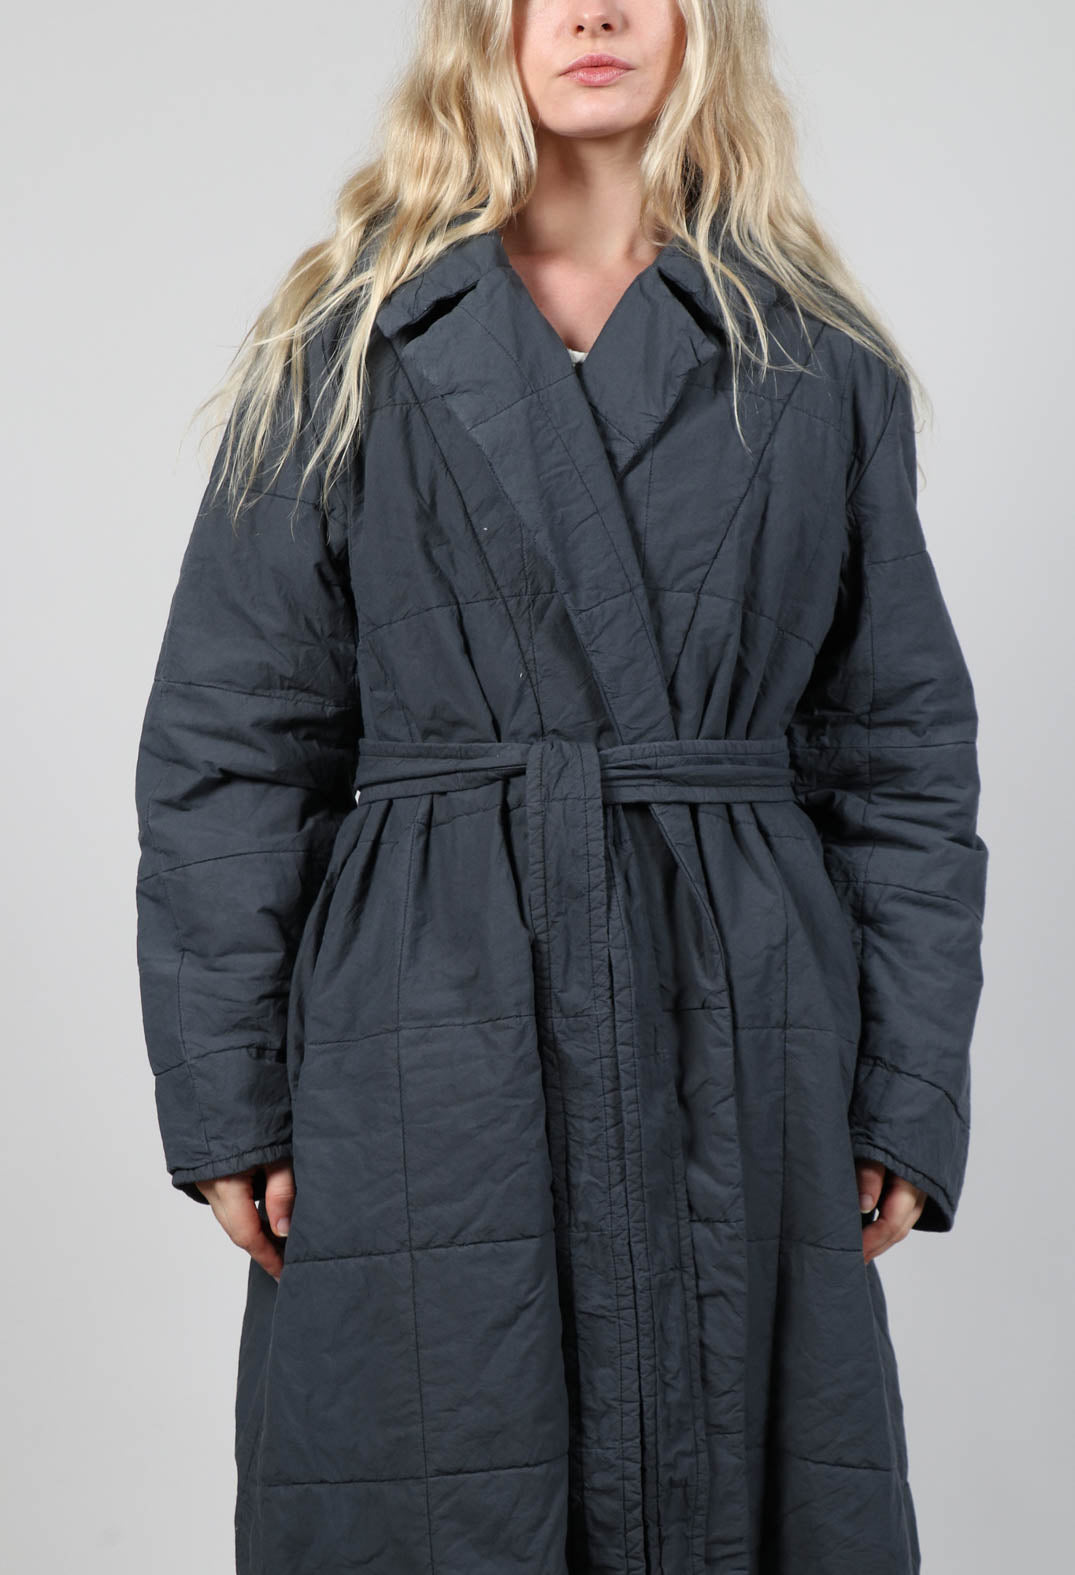 Aufrechtler Coat in Versteck Blue – Olivia May